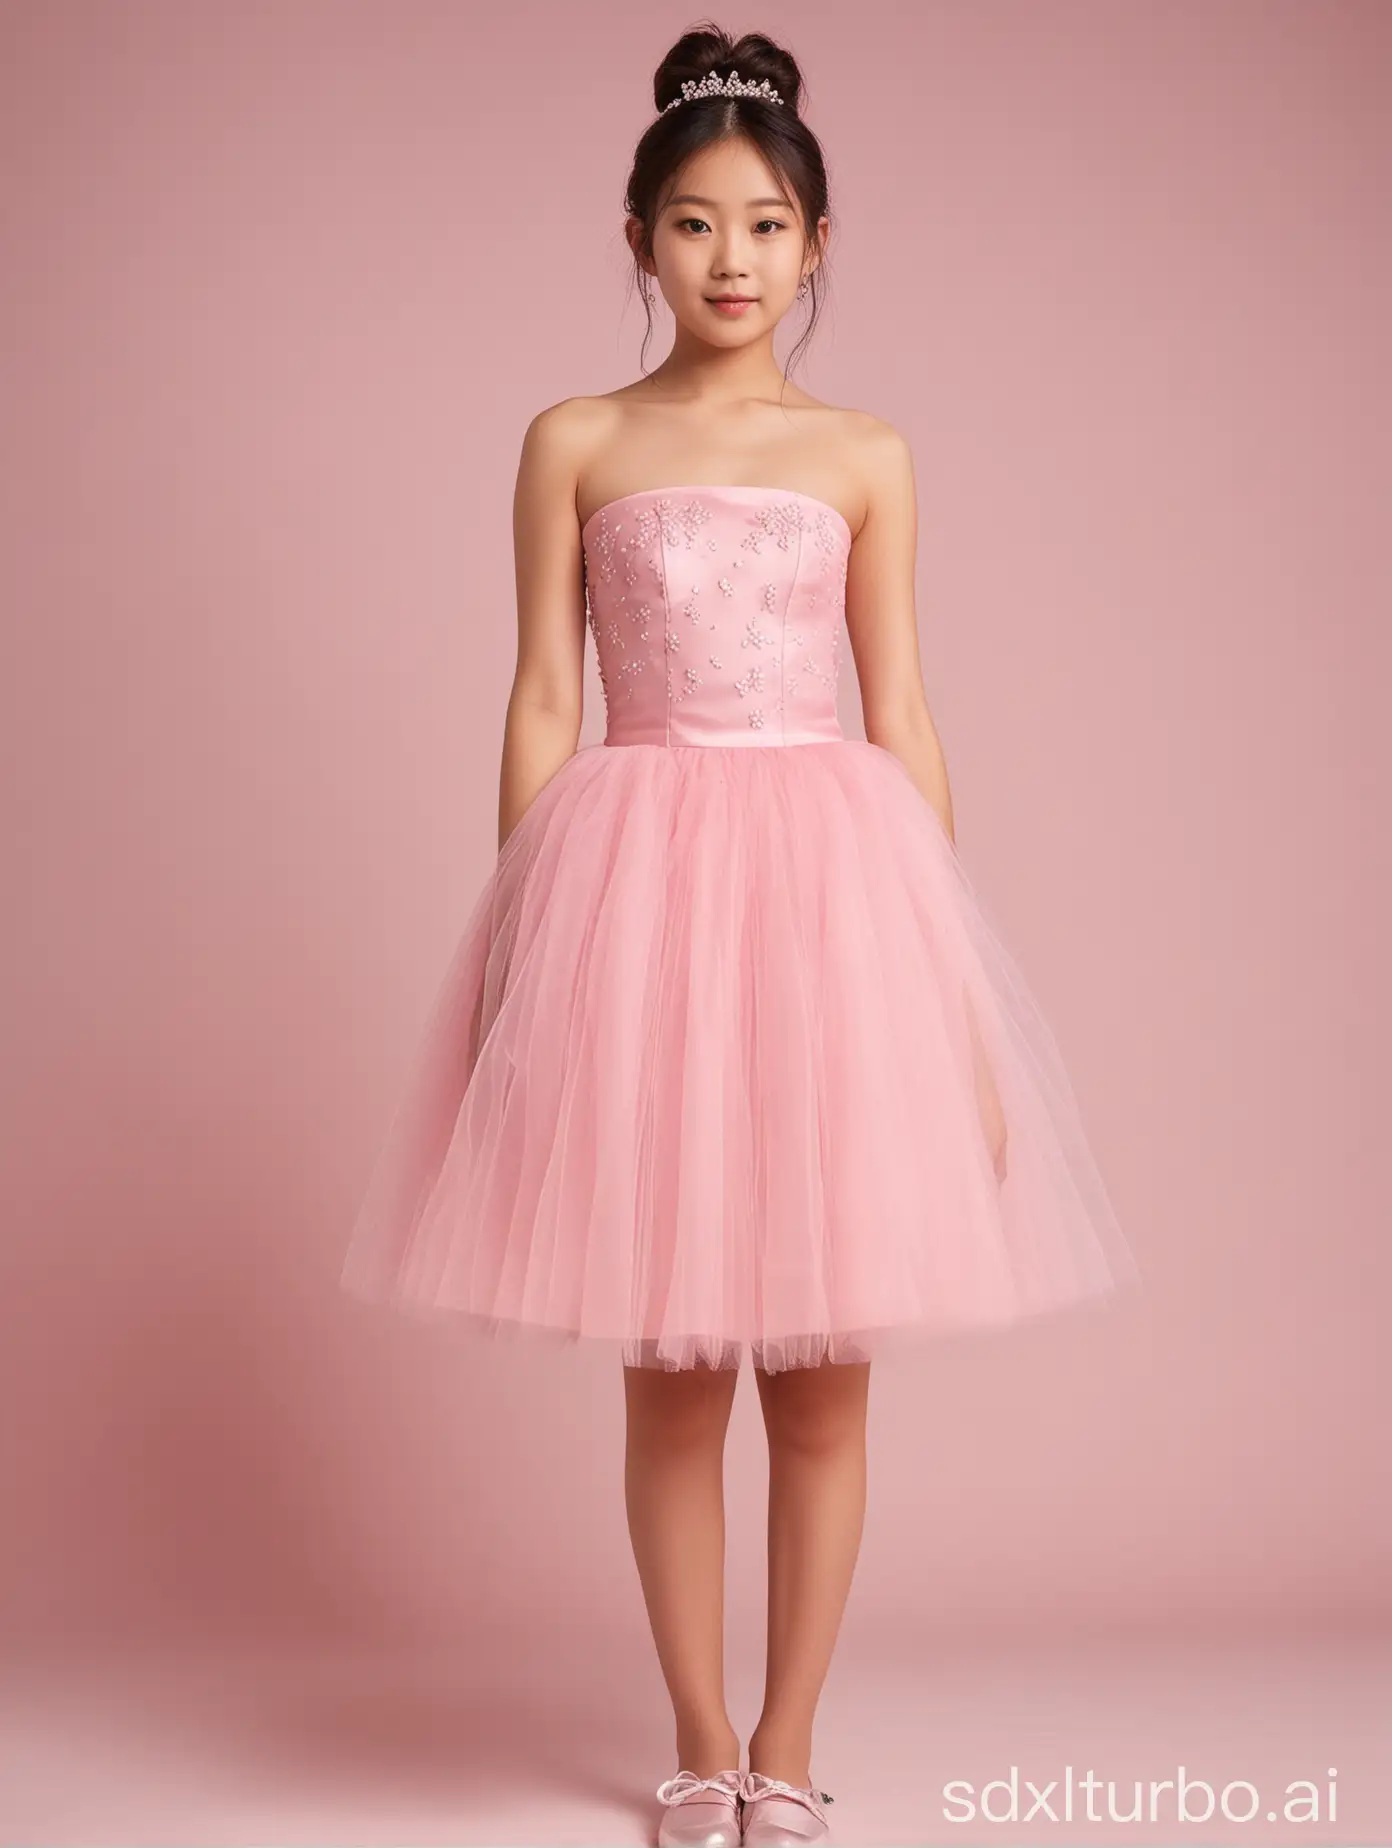 12yo,1girl,Japanese,pink strapless short tulle dress,full body